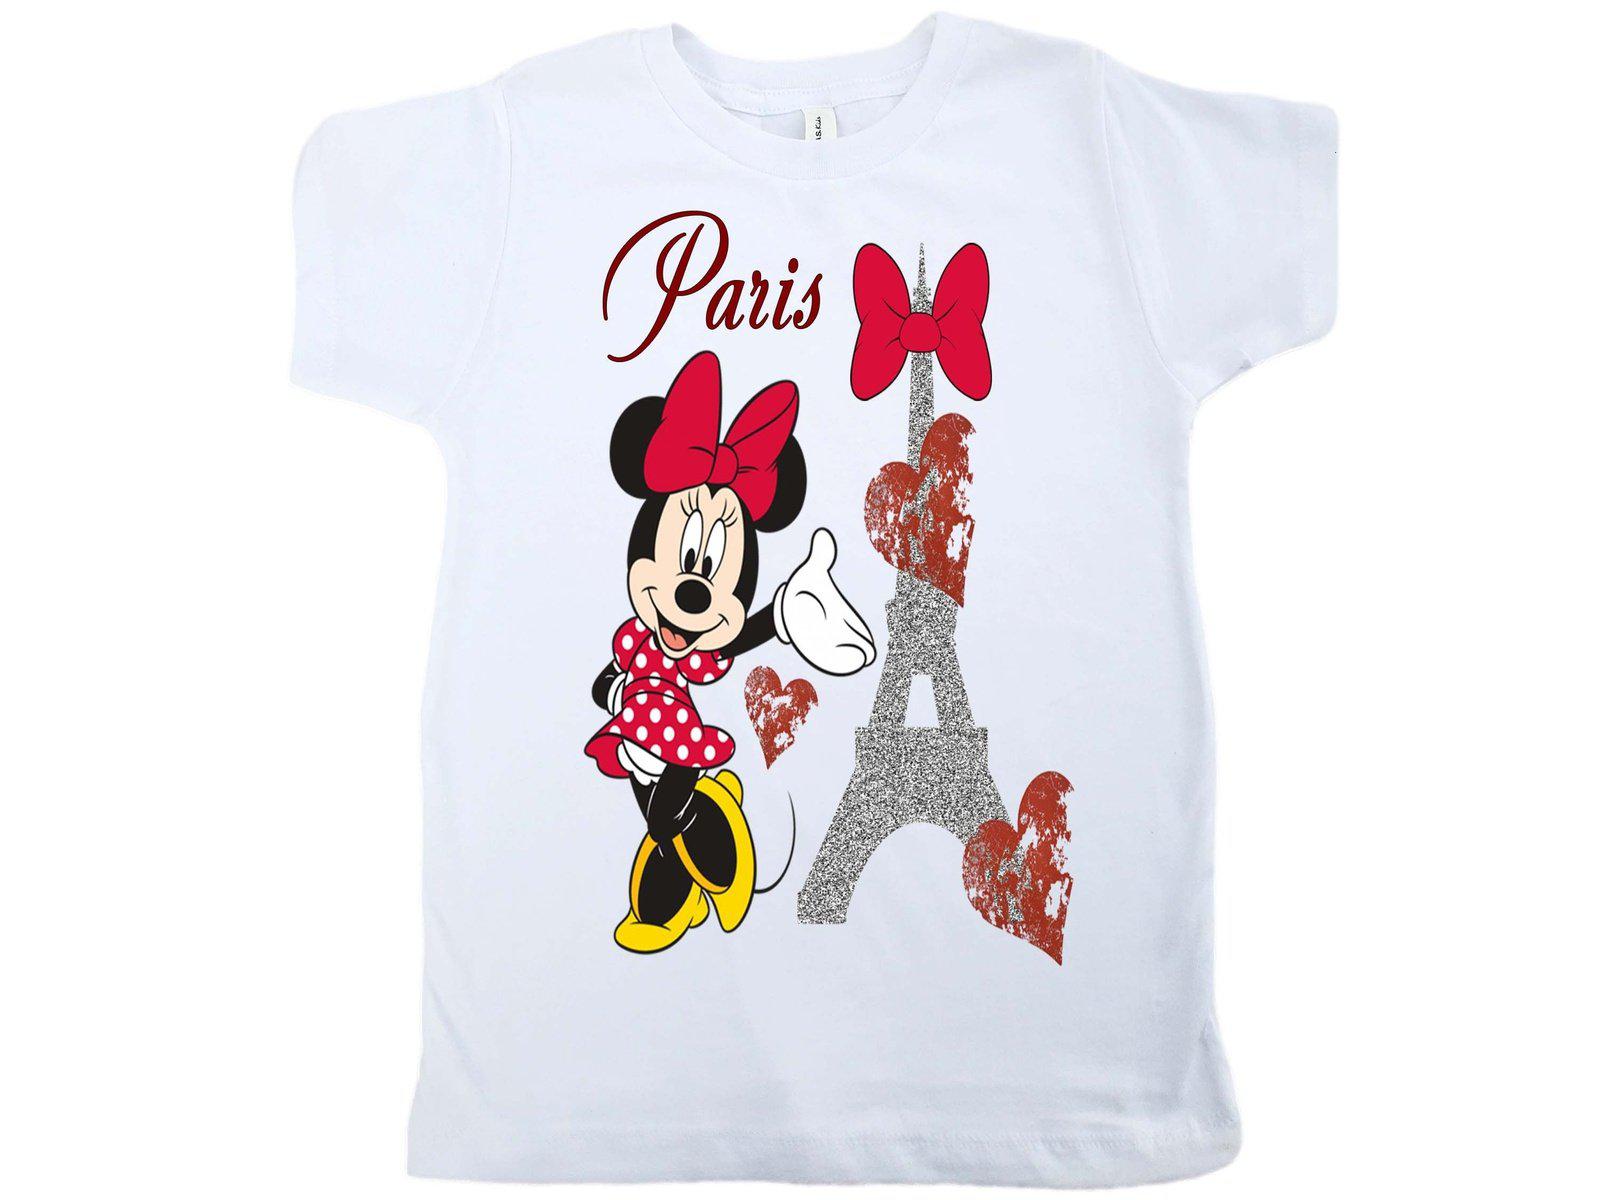 I LOVE PARIS t shirt 